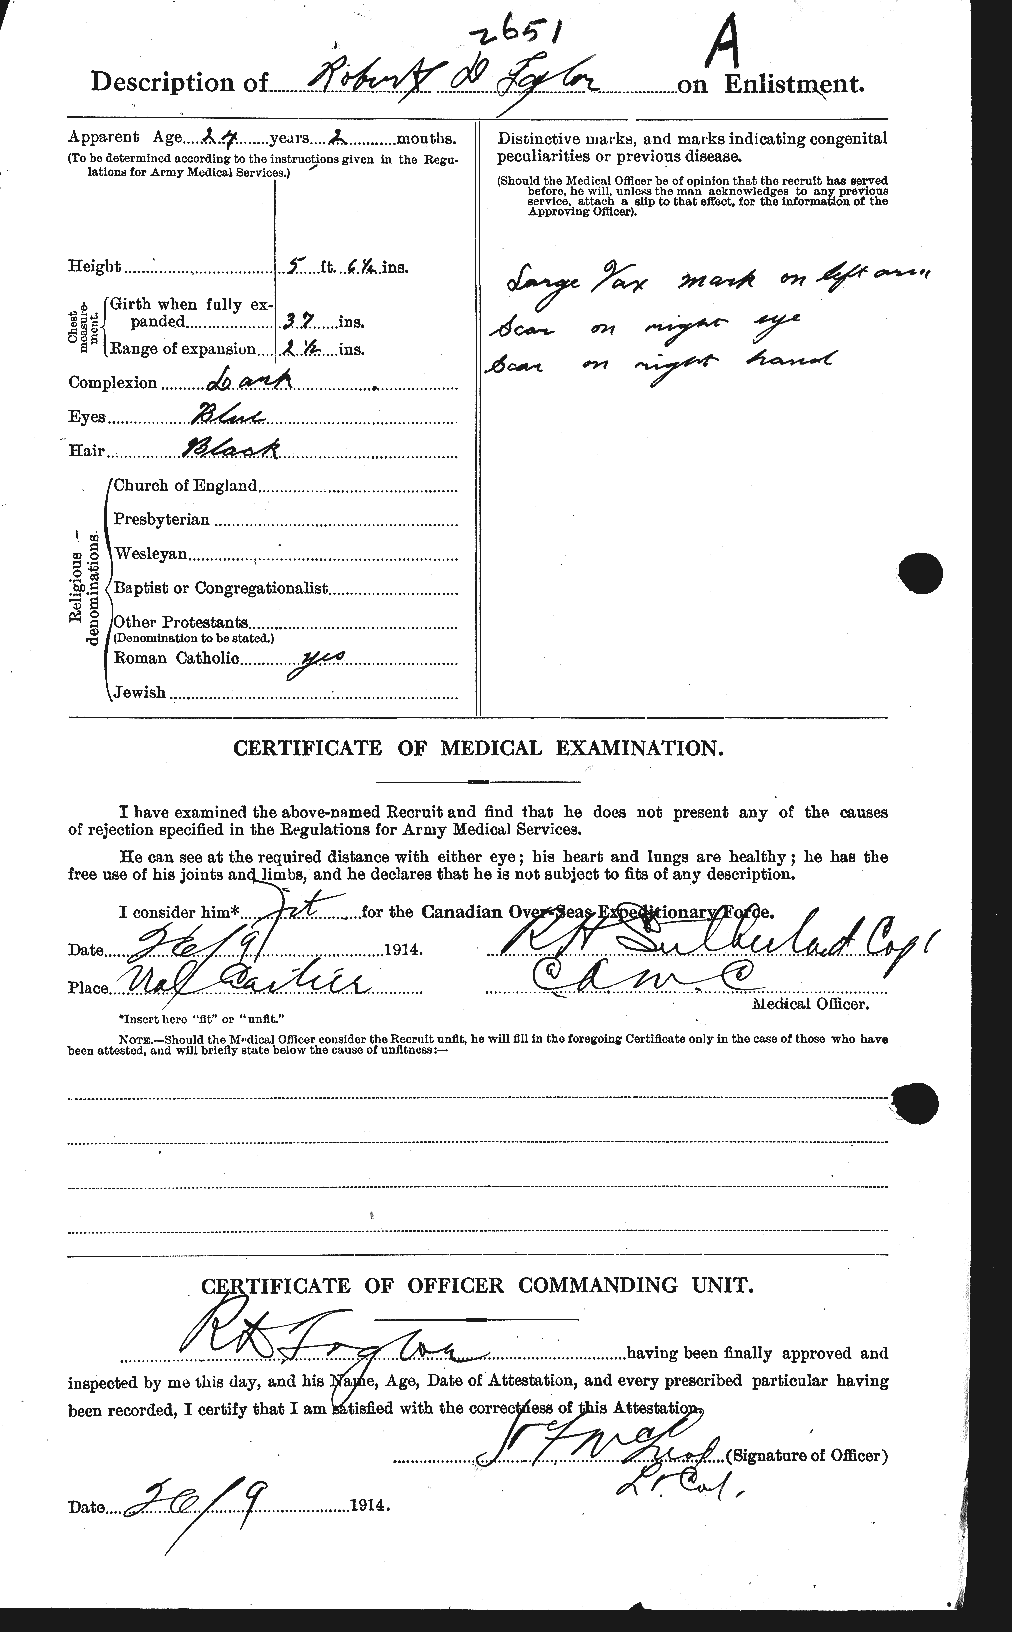 Dossiers du Personnel de la Première Guerre mondiale - CEC 627468b